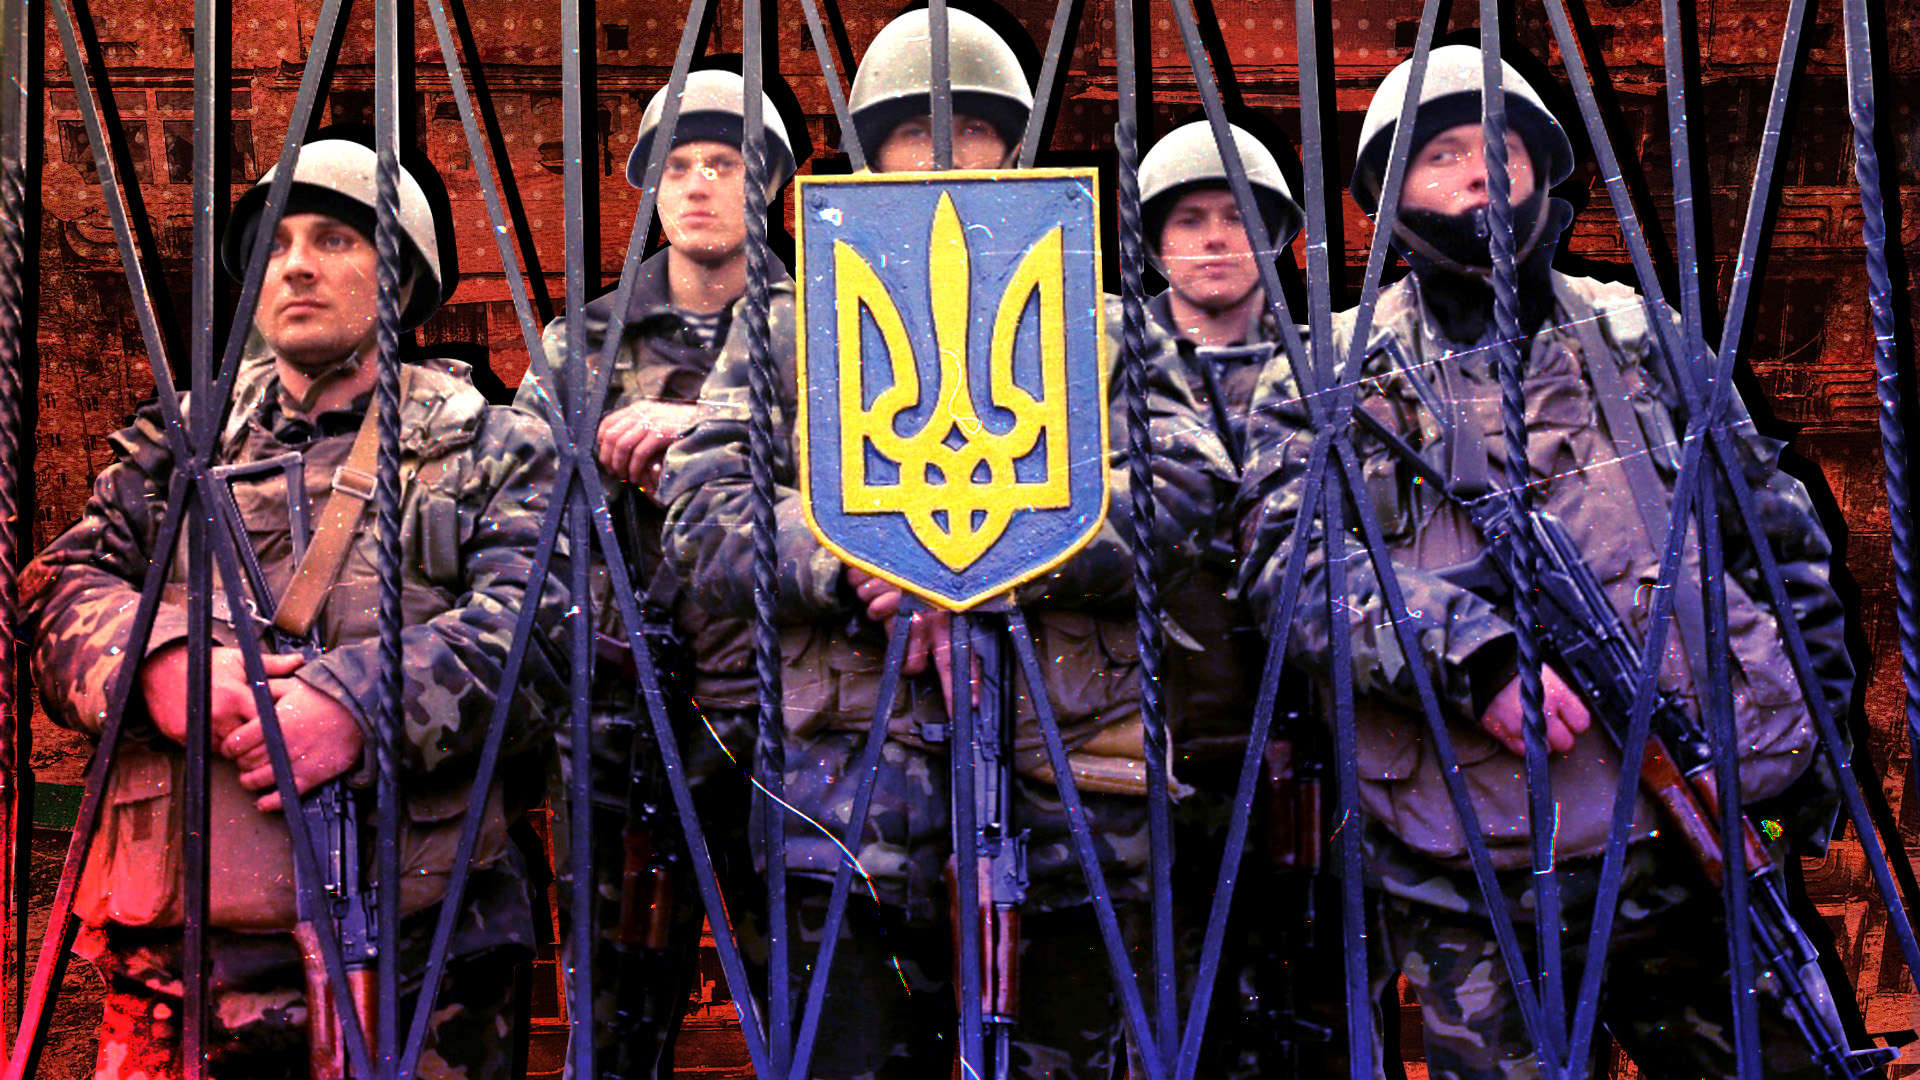 Герман Владимиров: На переговорах со стороны Украины выступают уголовники 